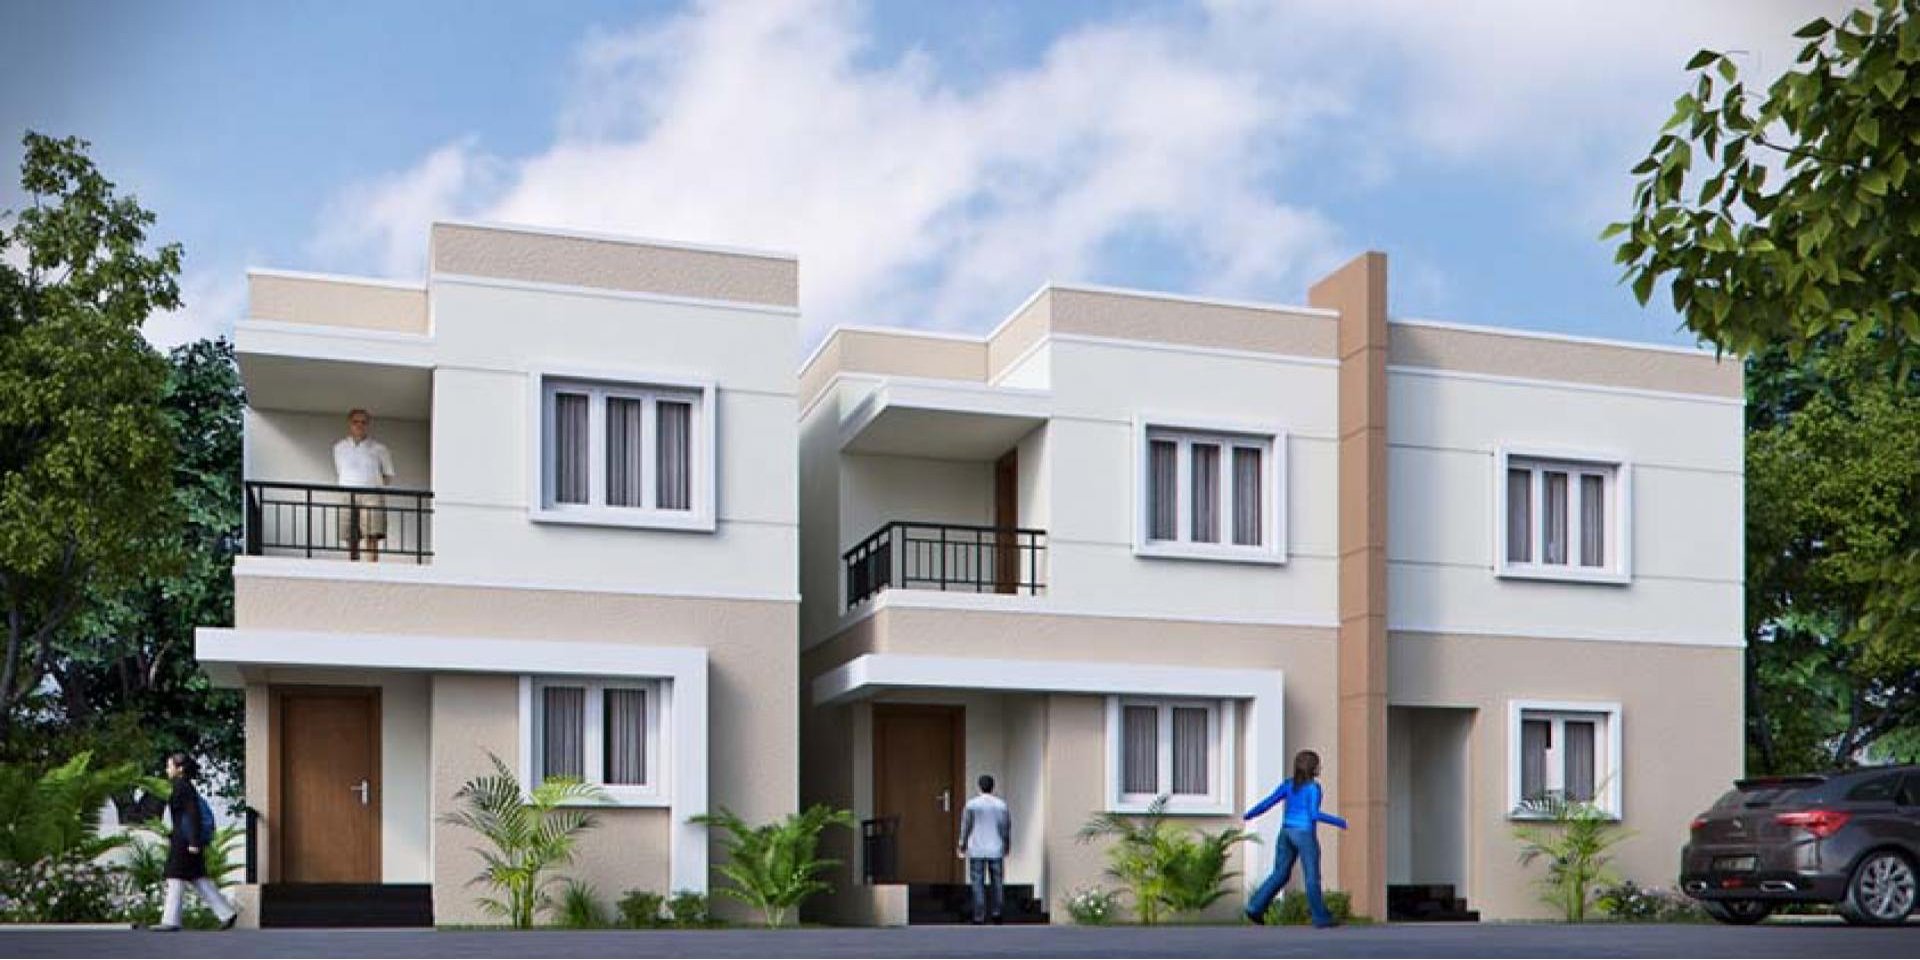 1, 2, 3 BHK Apartment for sale in Sriperumbudur